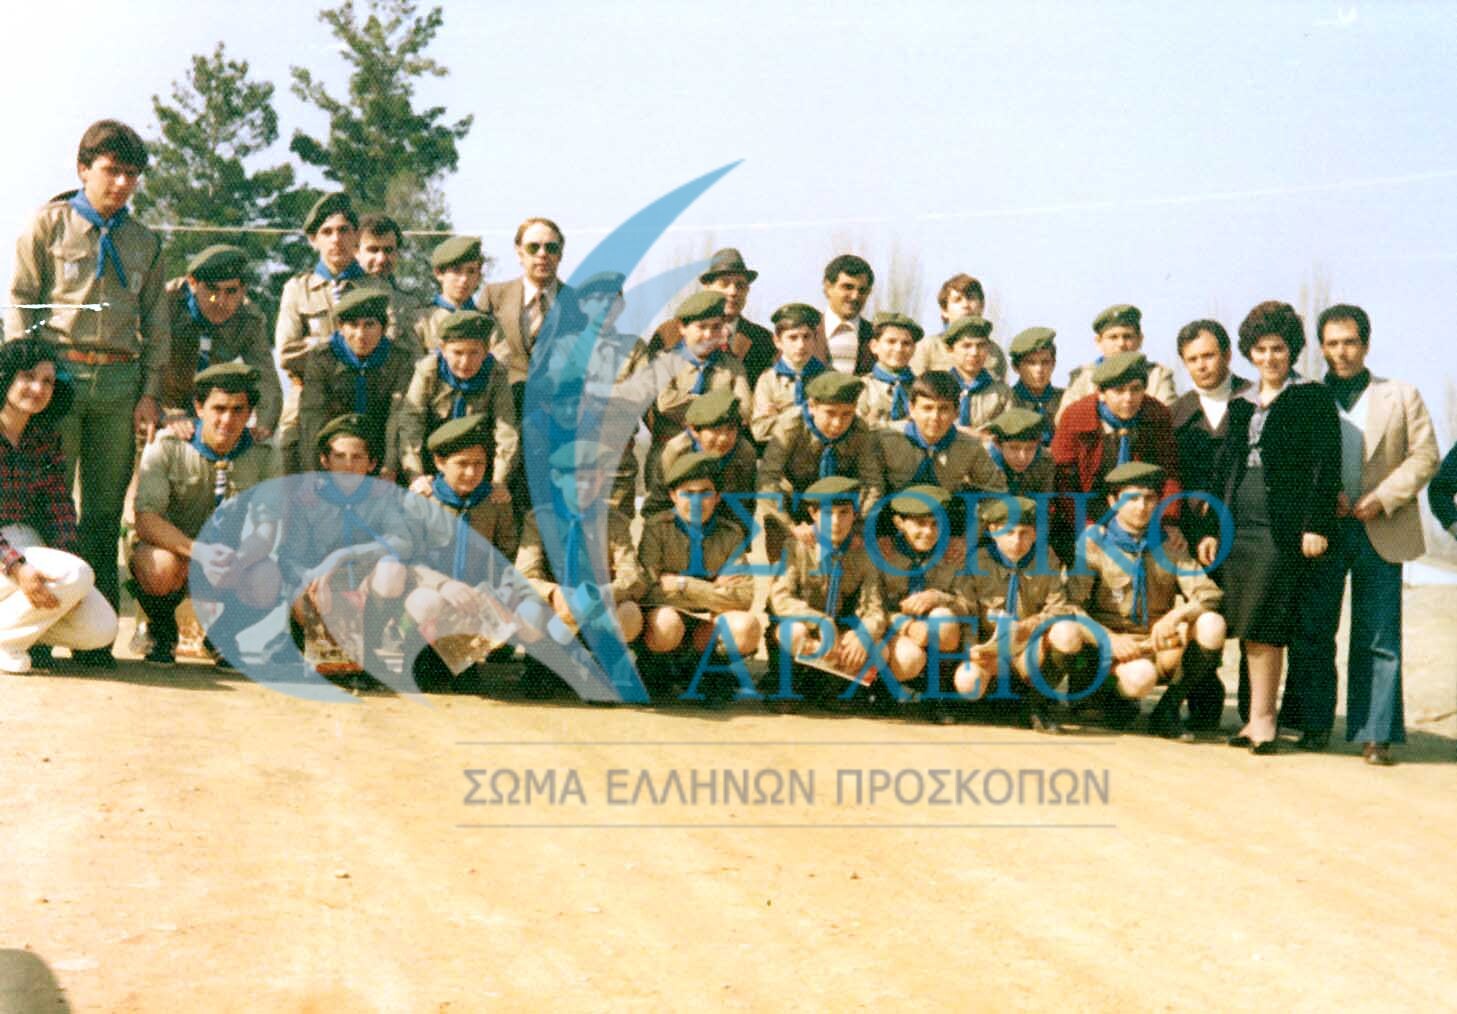 Η ομάδα Προσκόπων Βεργίνας με τον παλιό ΠΕ Δ. Βλαχόπουλο, τον ΠΕ Φ. Σύρπη, τον ΑΣ Σ. Τελλίδη και μέλη της ΕΚΣ το 1979.